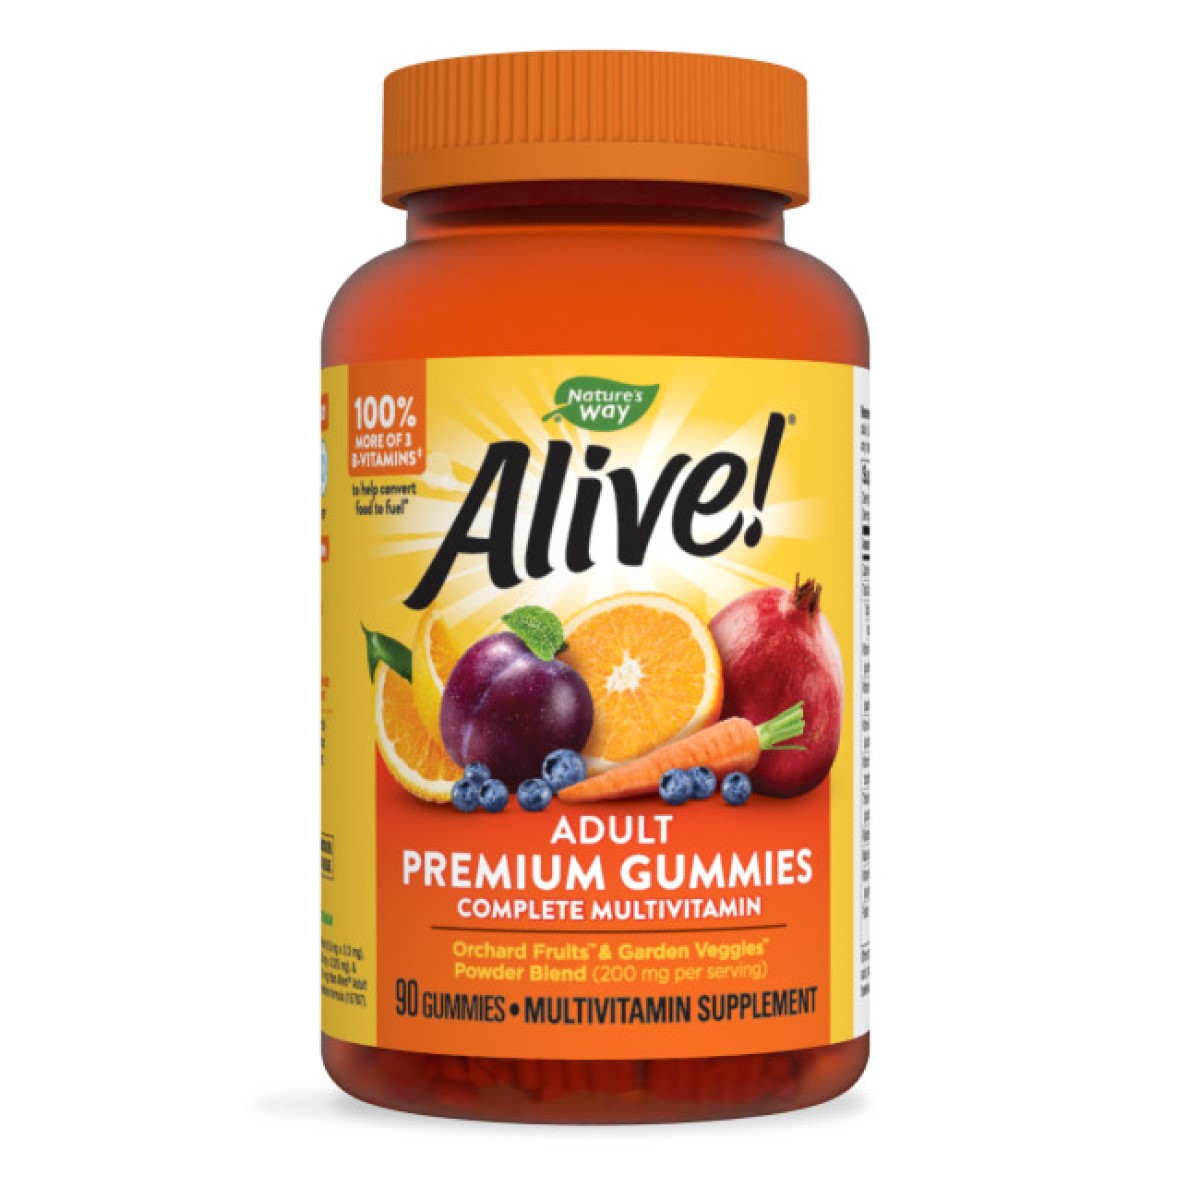 Primary image of Alive! Multi-Vitamin Adult Gummies